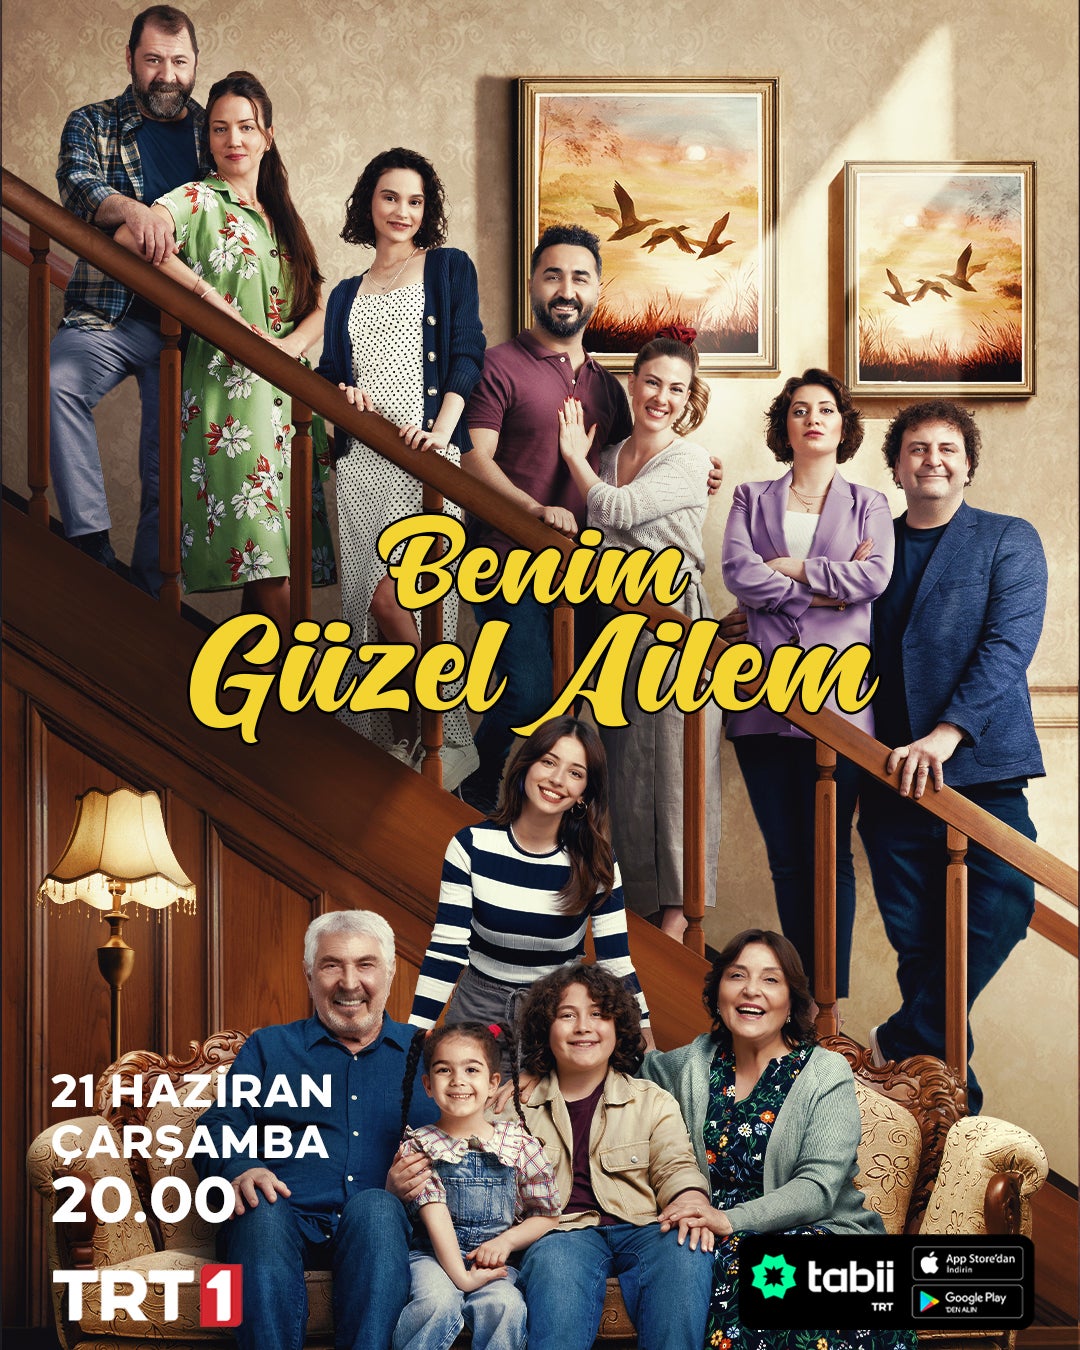 TV ratings for Once Again (Benim Güzel Ailem) in Denmark. TRT 1 TV series